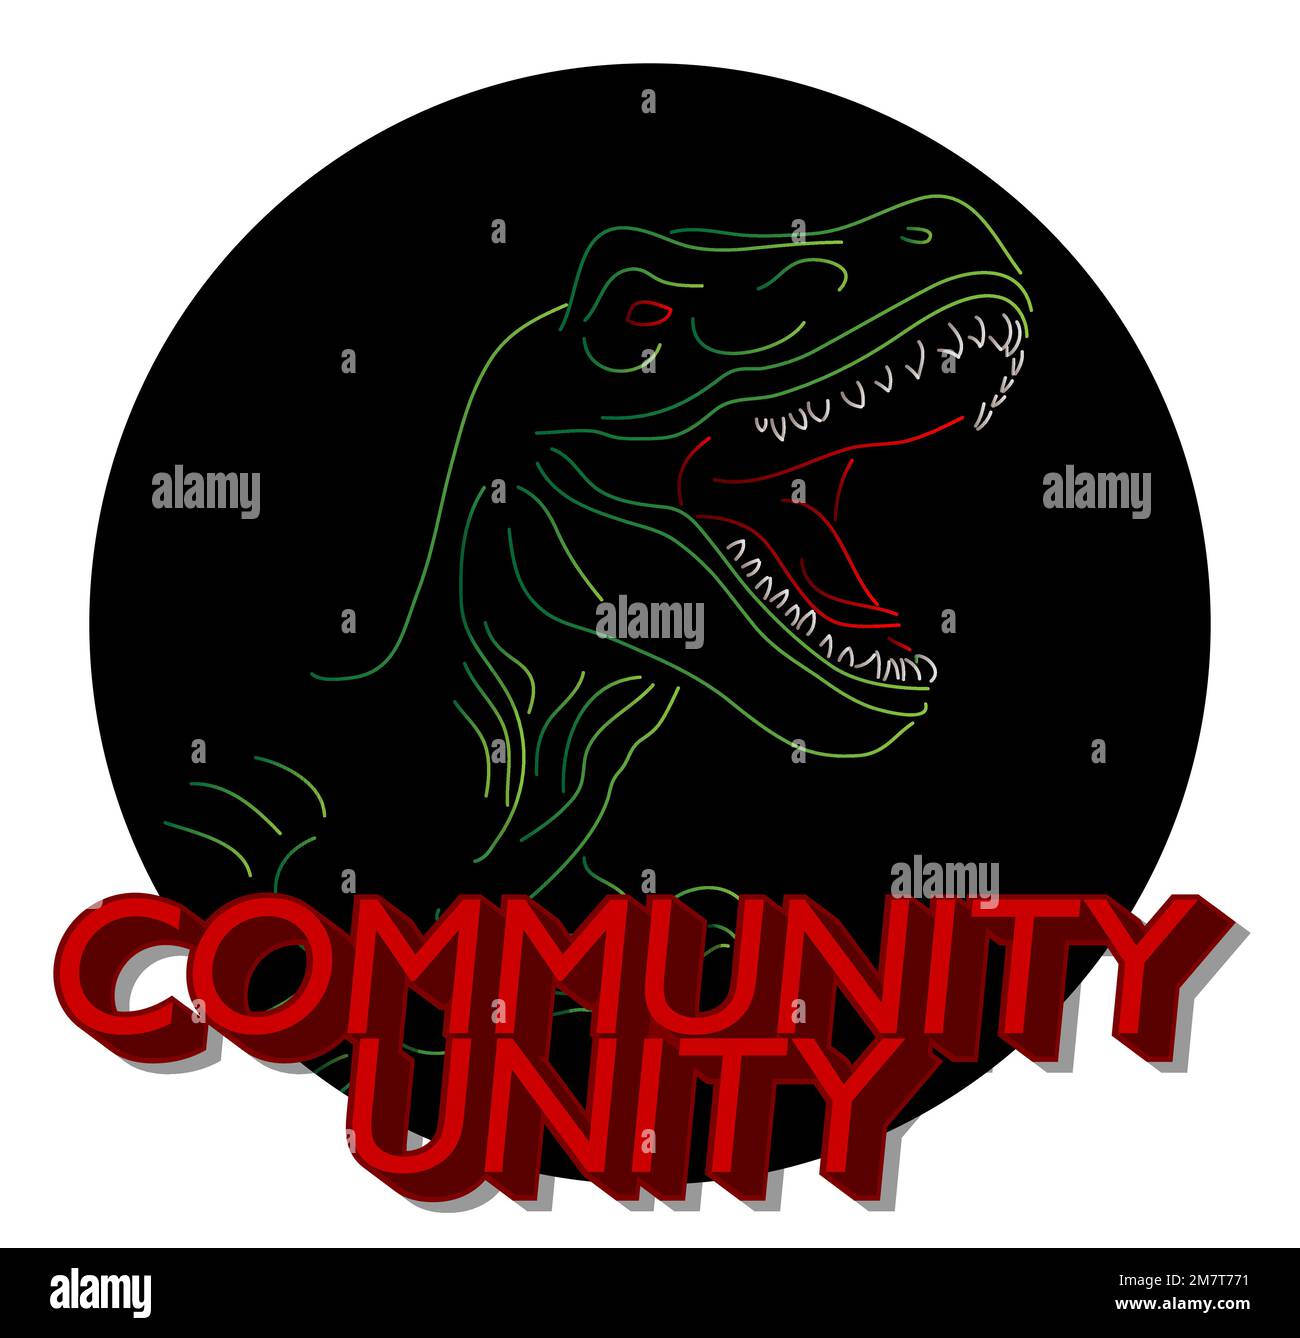 Dinosaurier mit Sprechblase, die das Wort "Community Unity" sagt. Tyrannosaurus Rex mit Gedanken. Stock Vektor